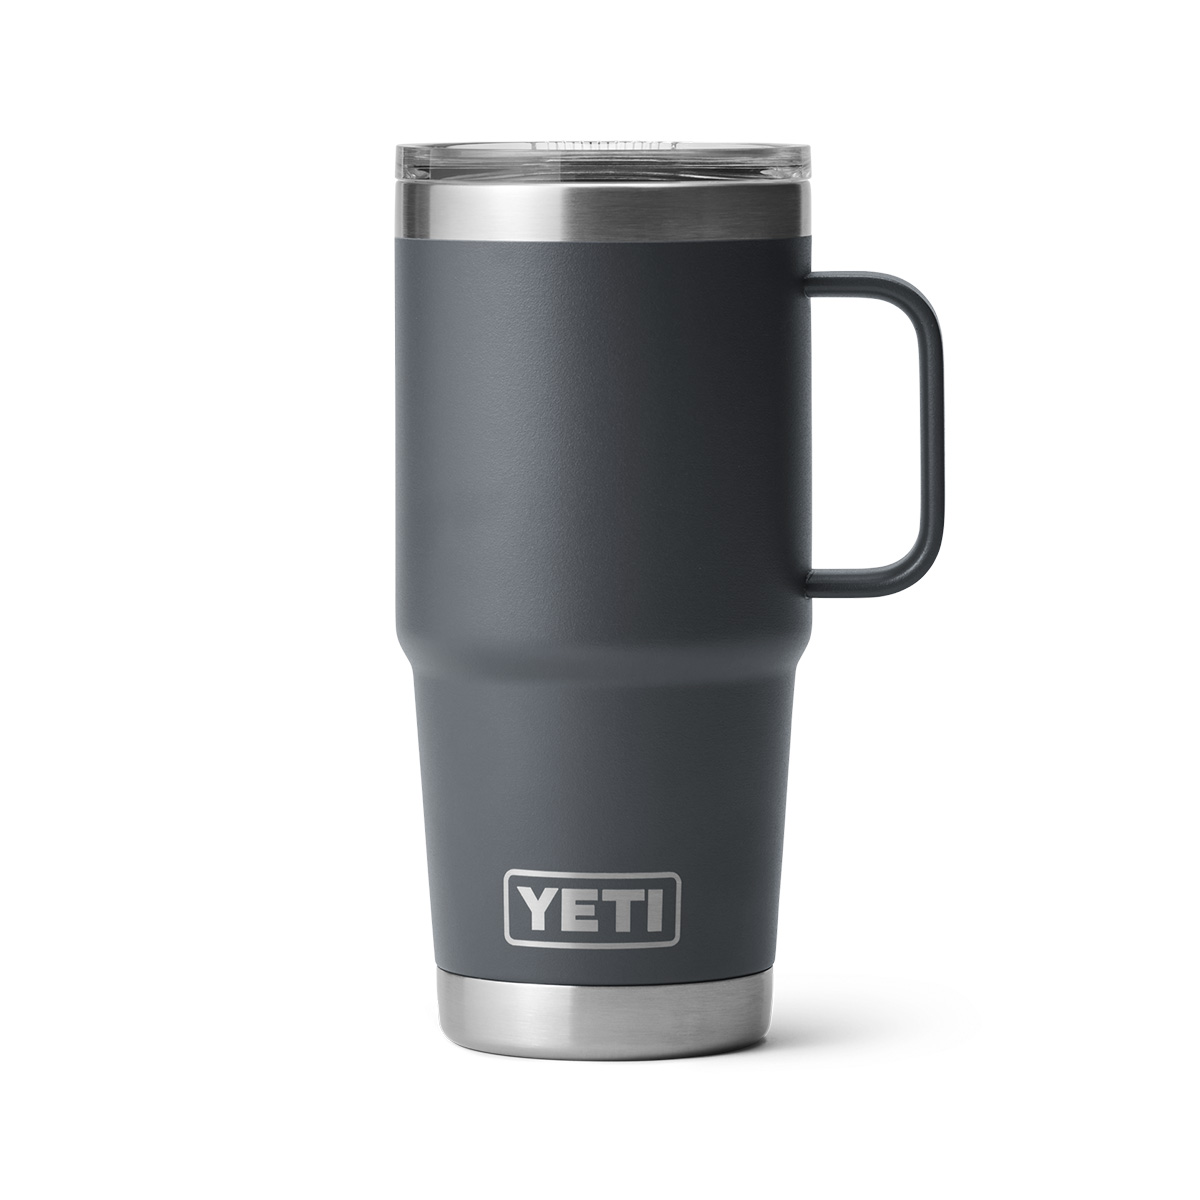 YETI recalls Stronghold lids from “Rambler” 20 oz. travel mugs